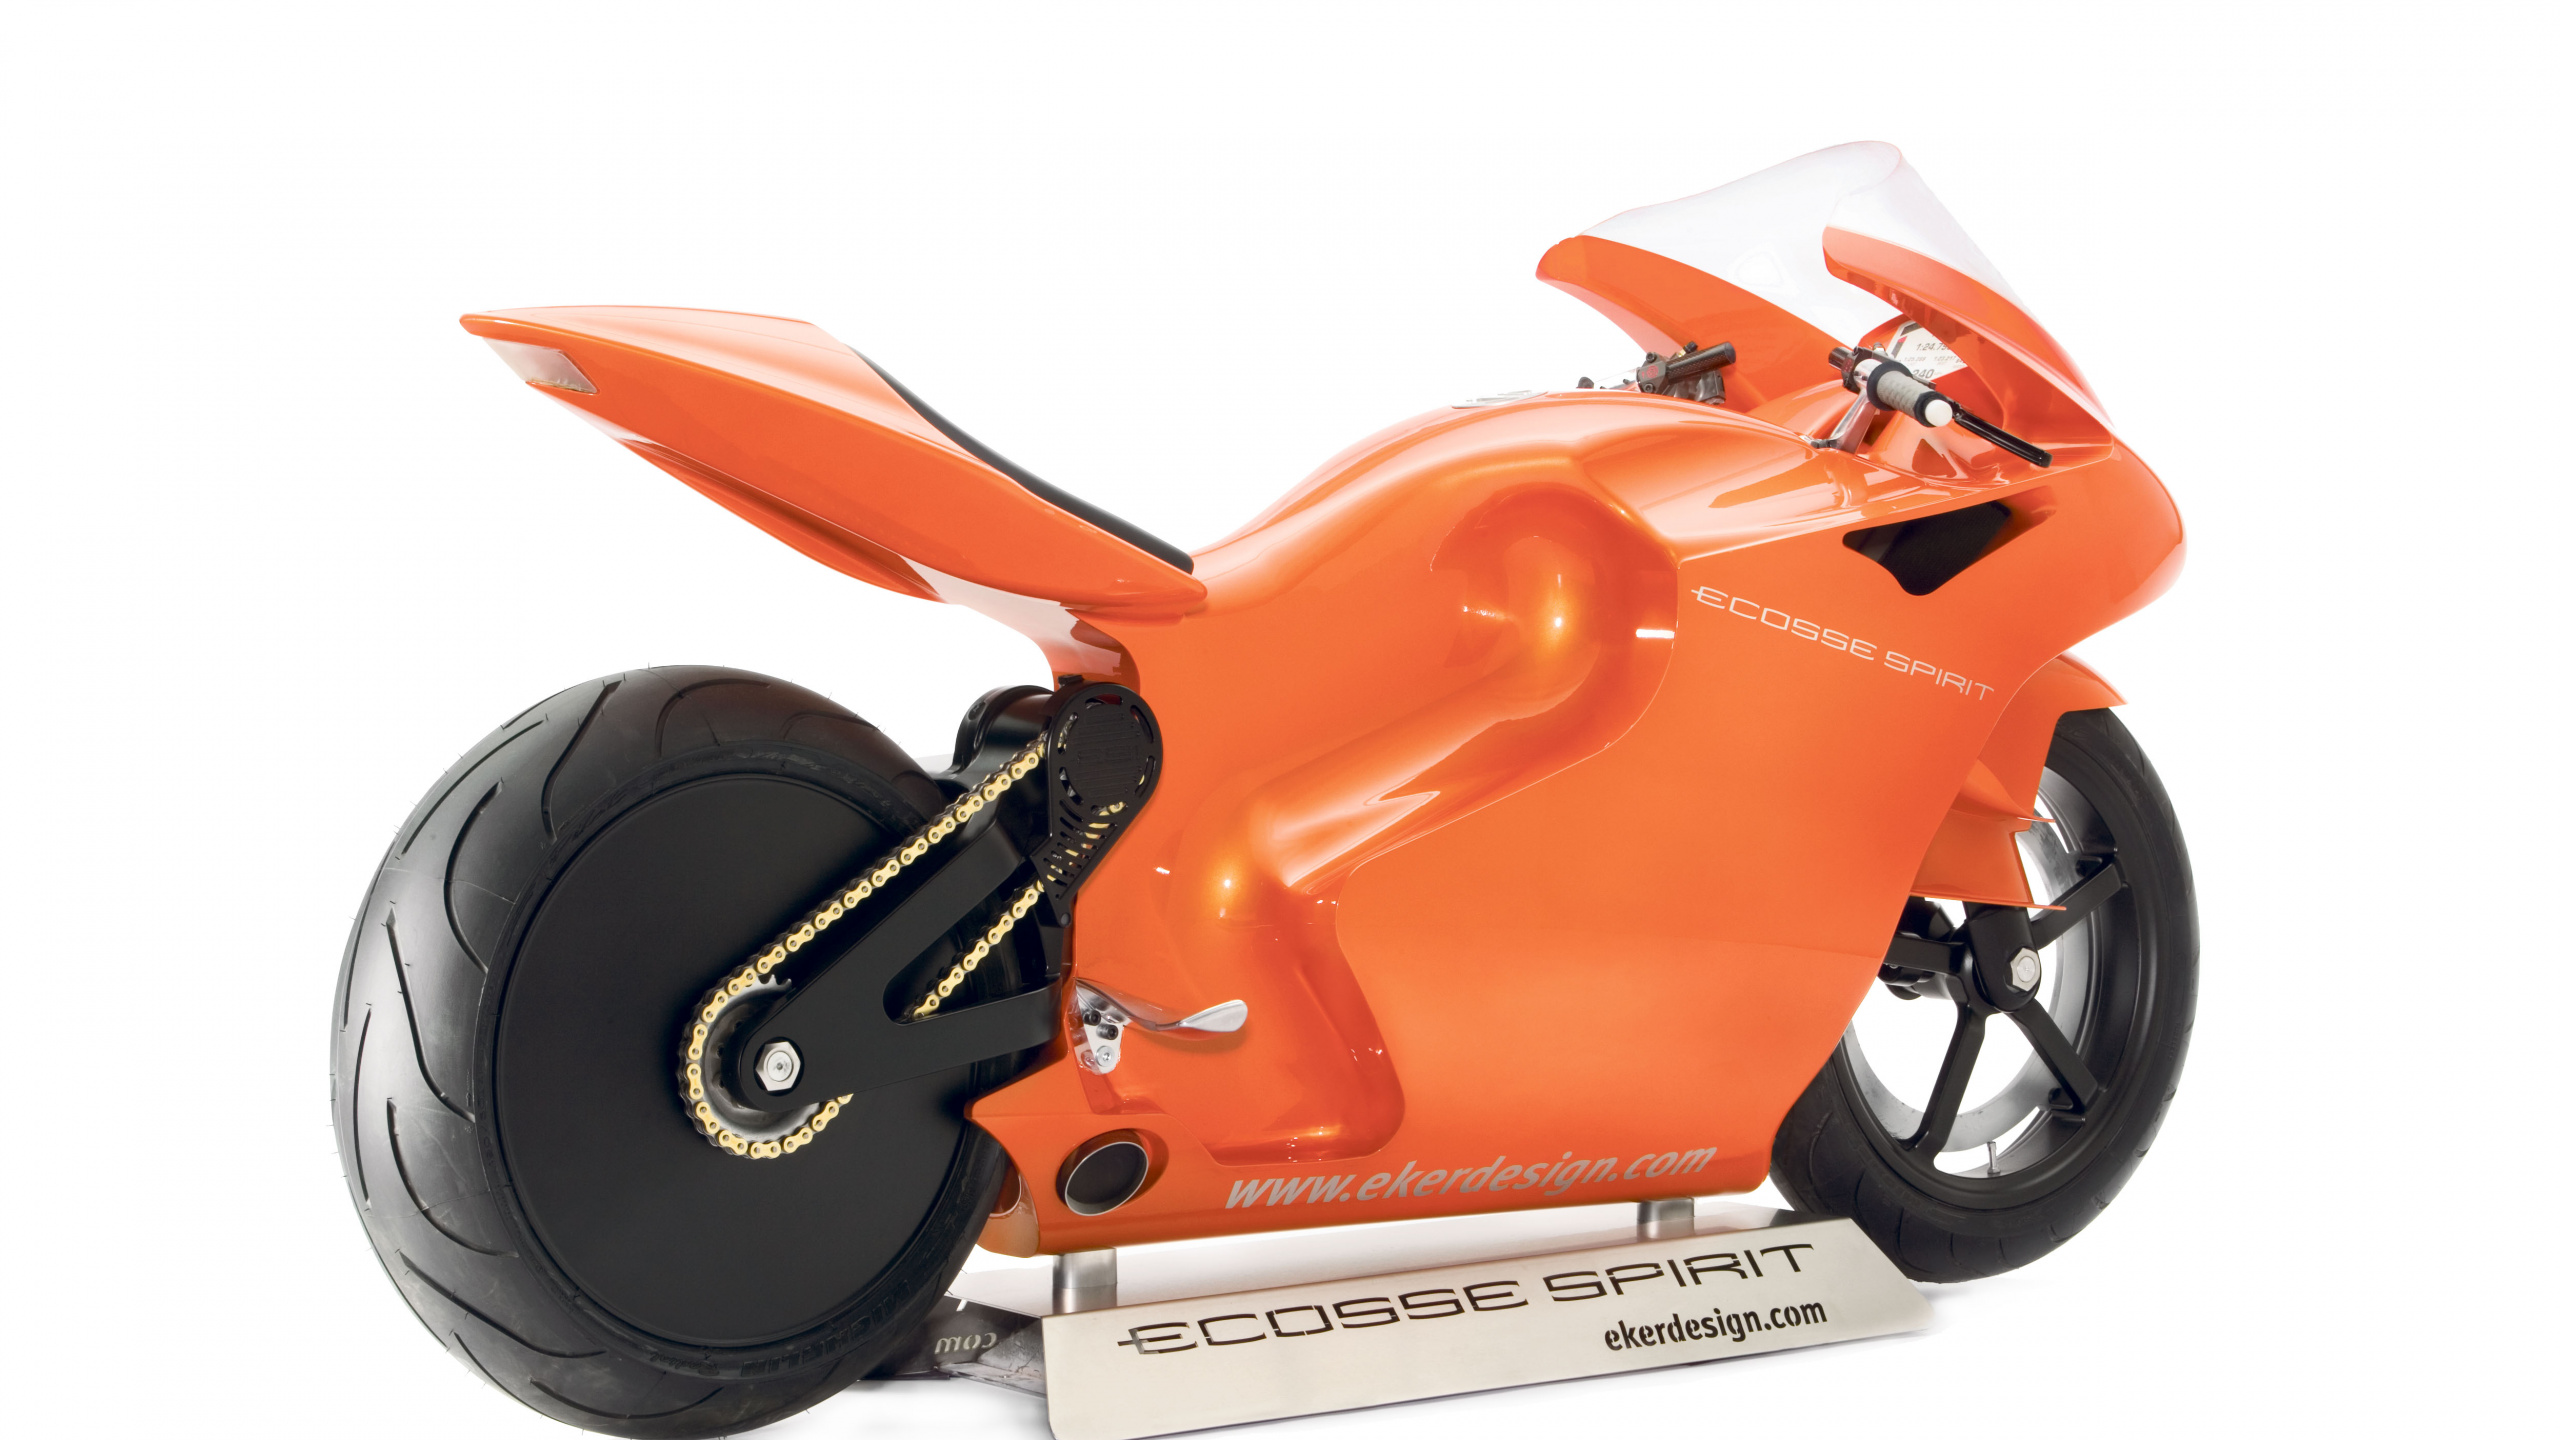 橙色, 定义的摩托车, 宝马摩托车, 然r750 壁纸 2560x1440 允许